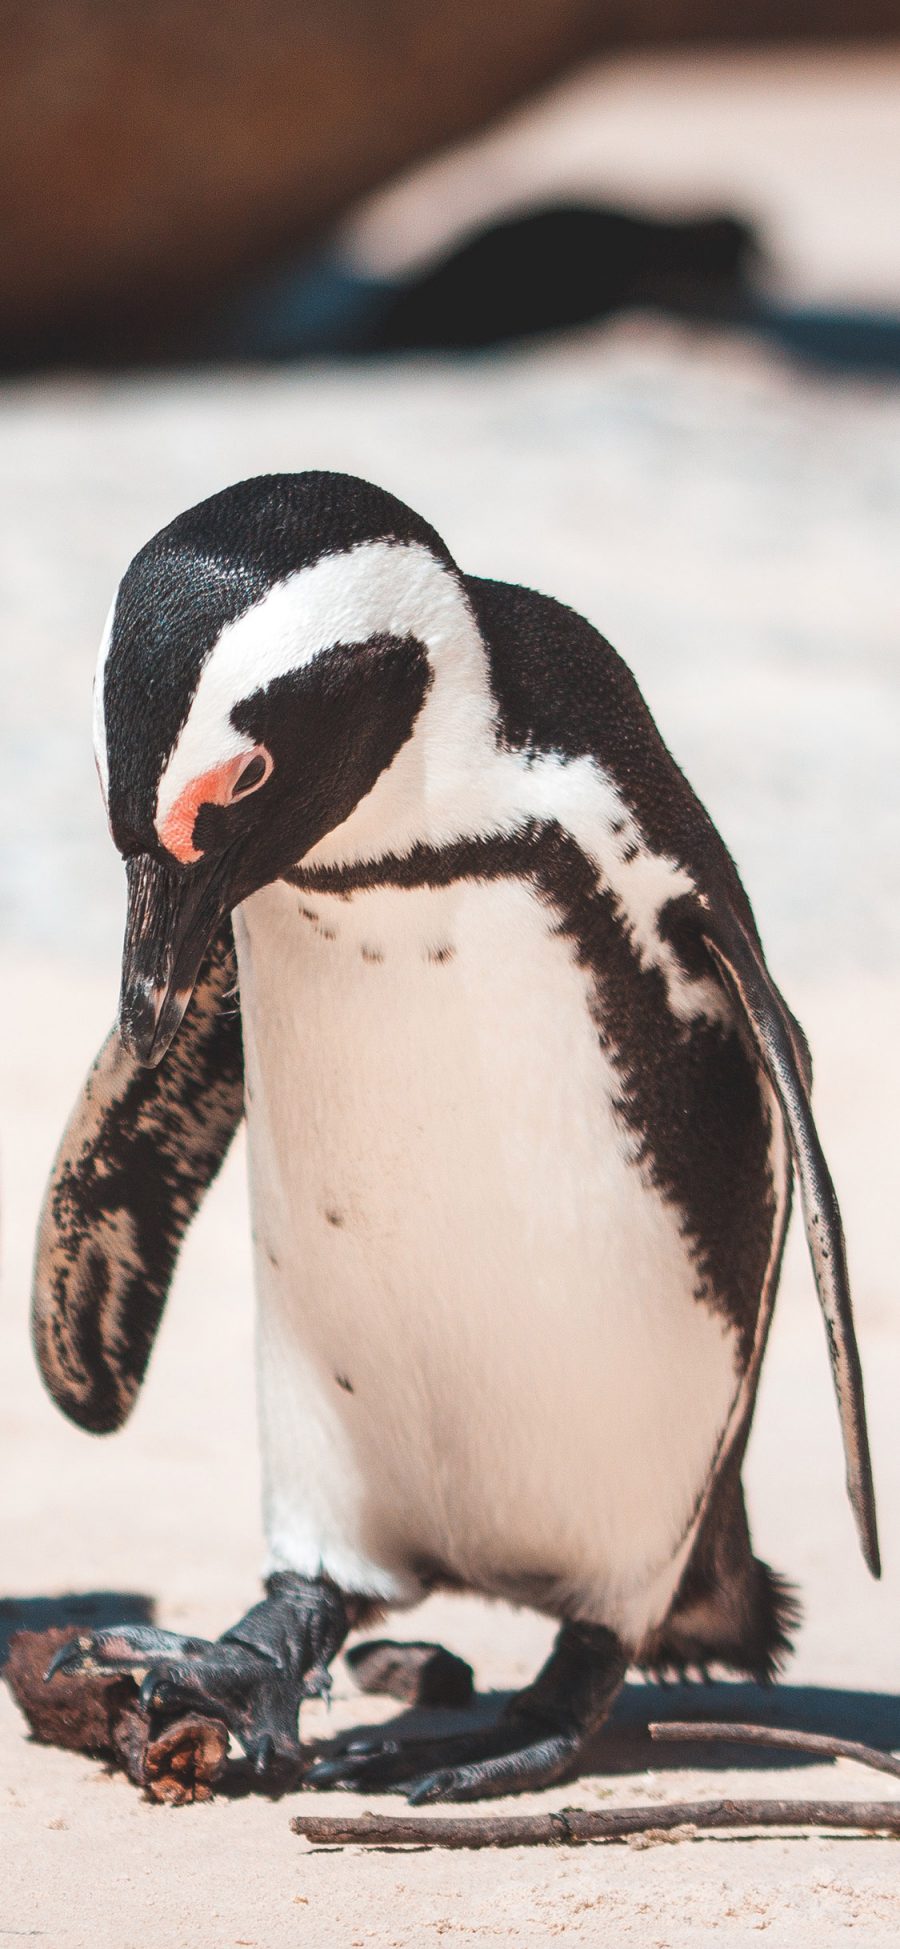 [2436×1125]保护动物 南极企鹅 黑白 苹果手机壁纸图片